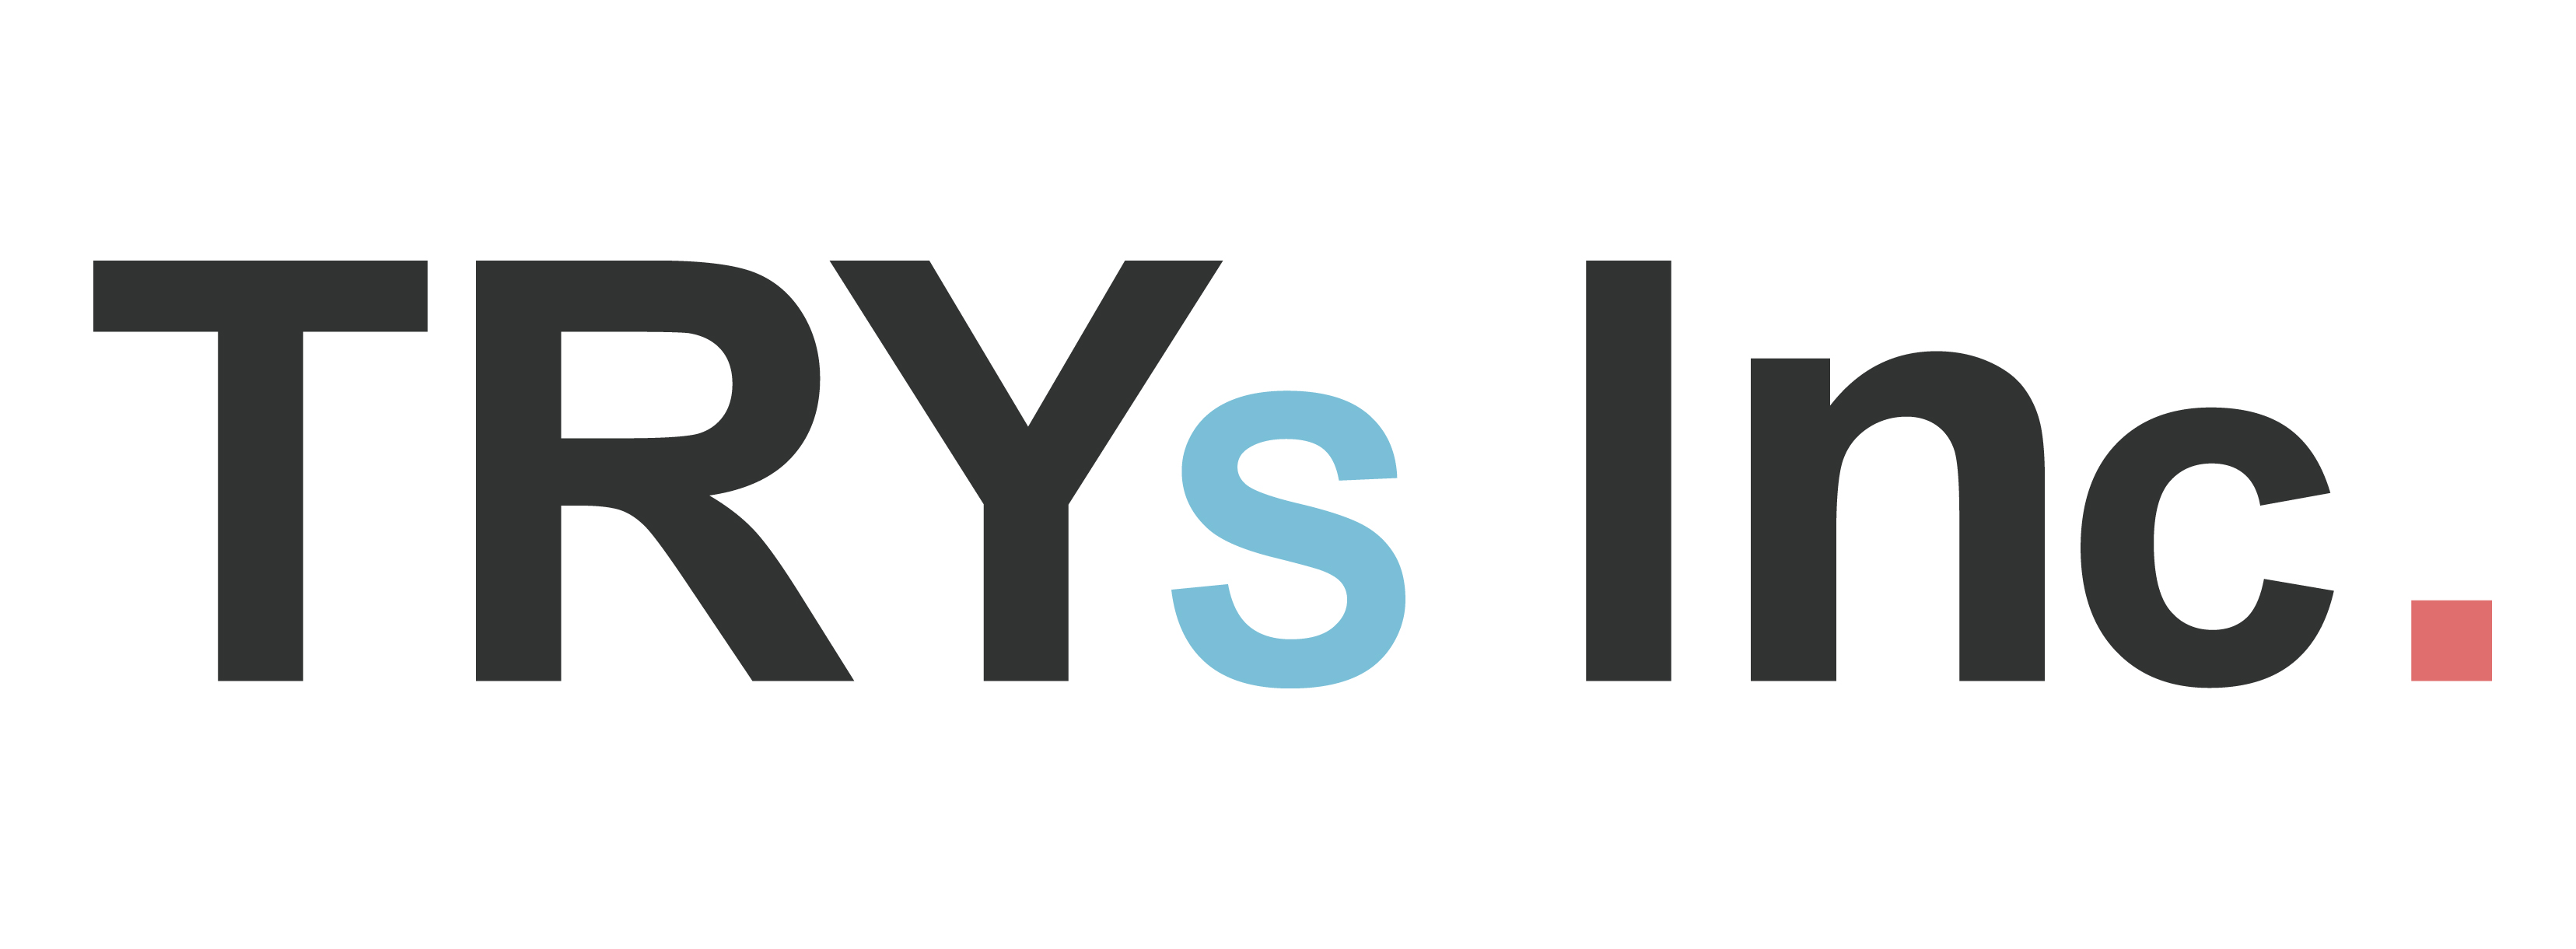 TRYS株式会社